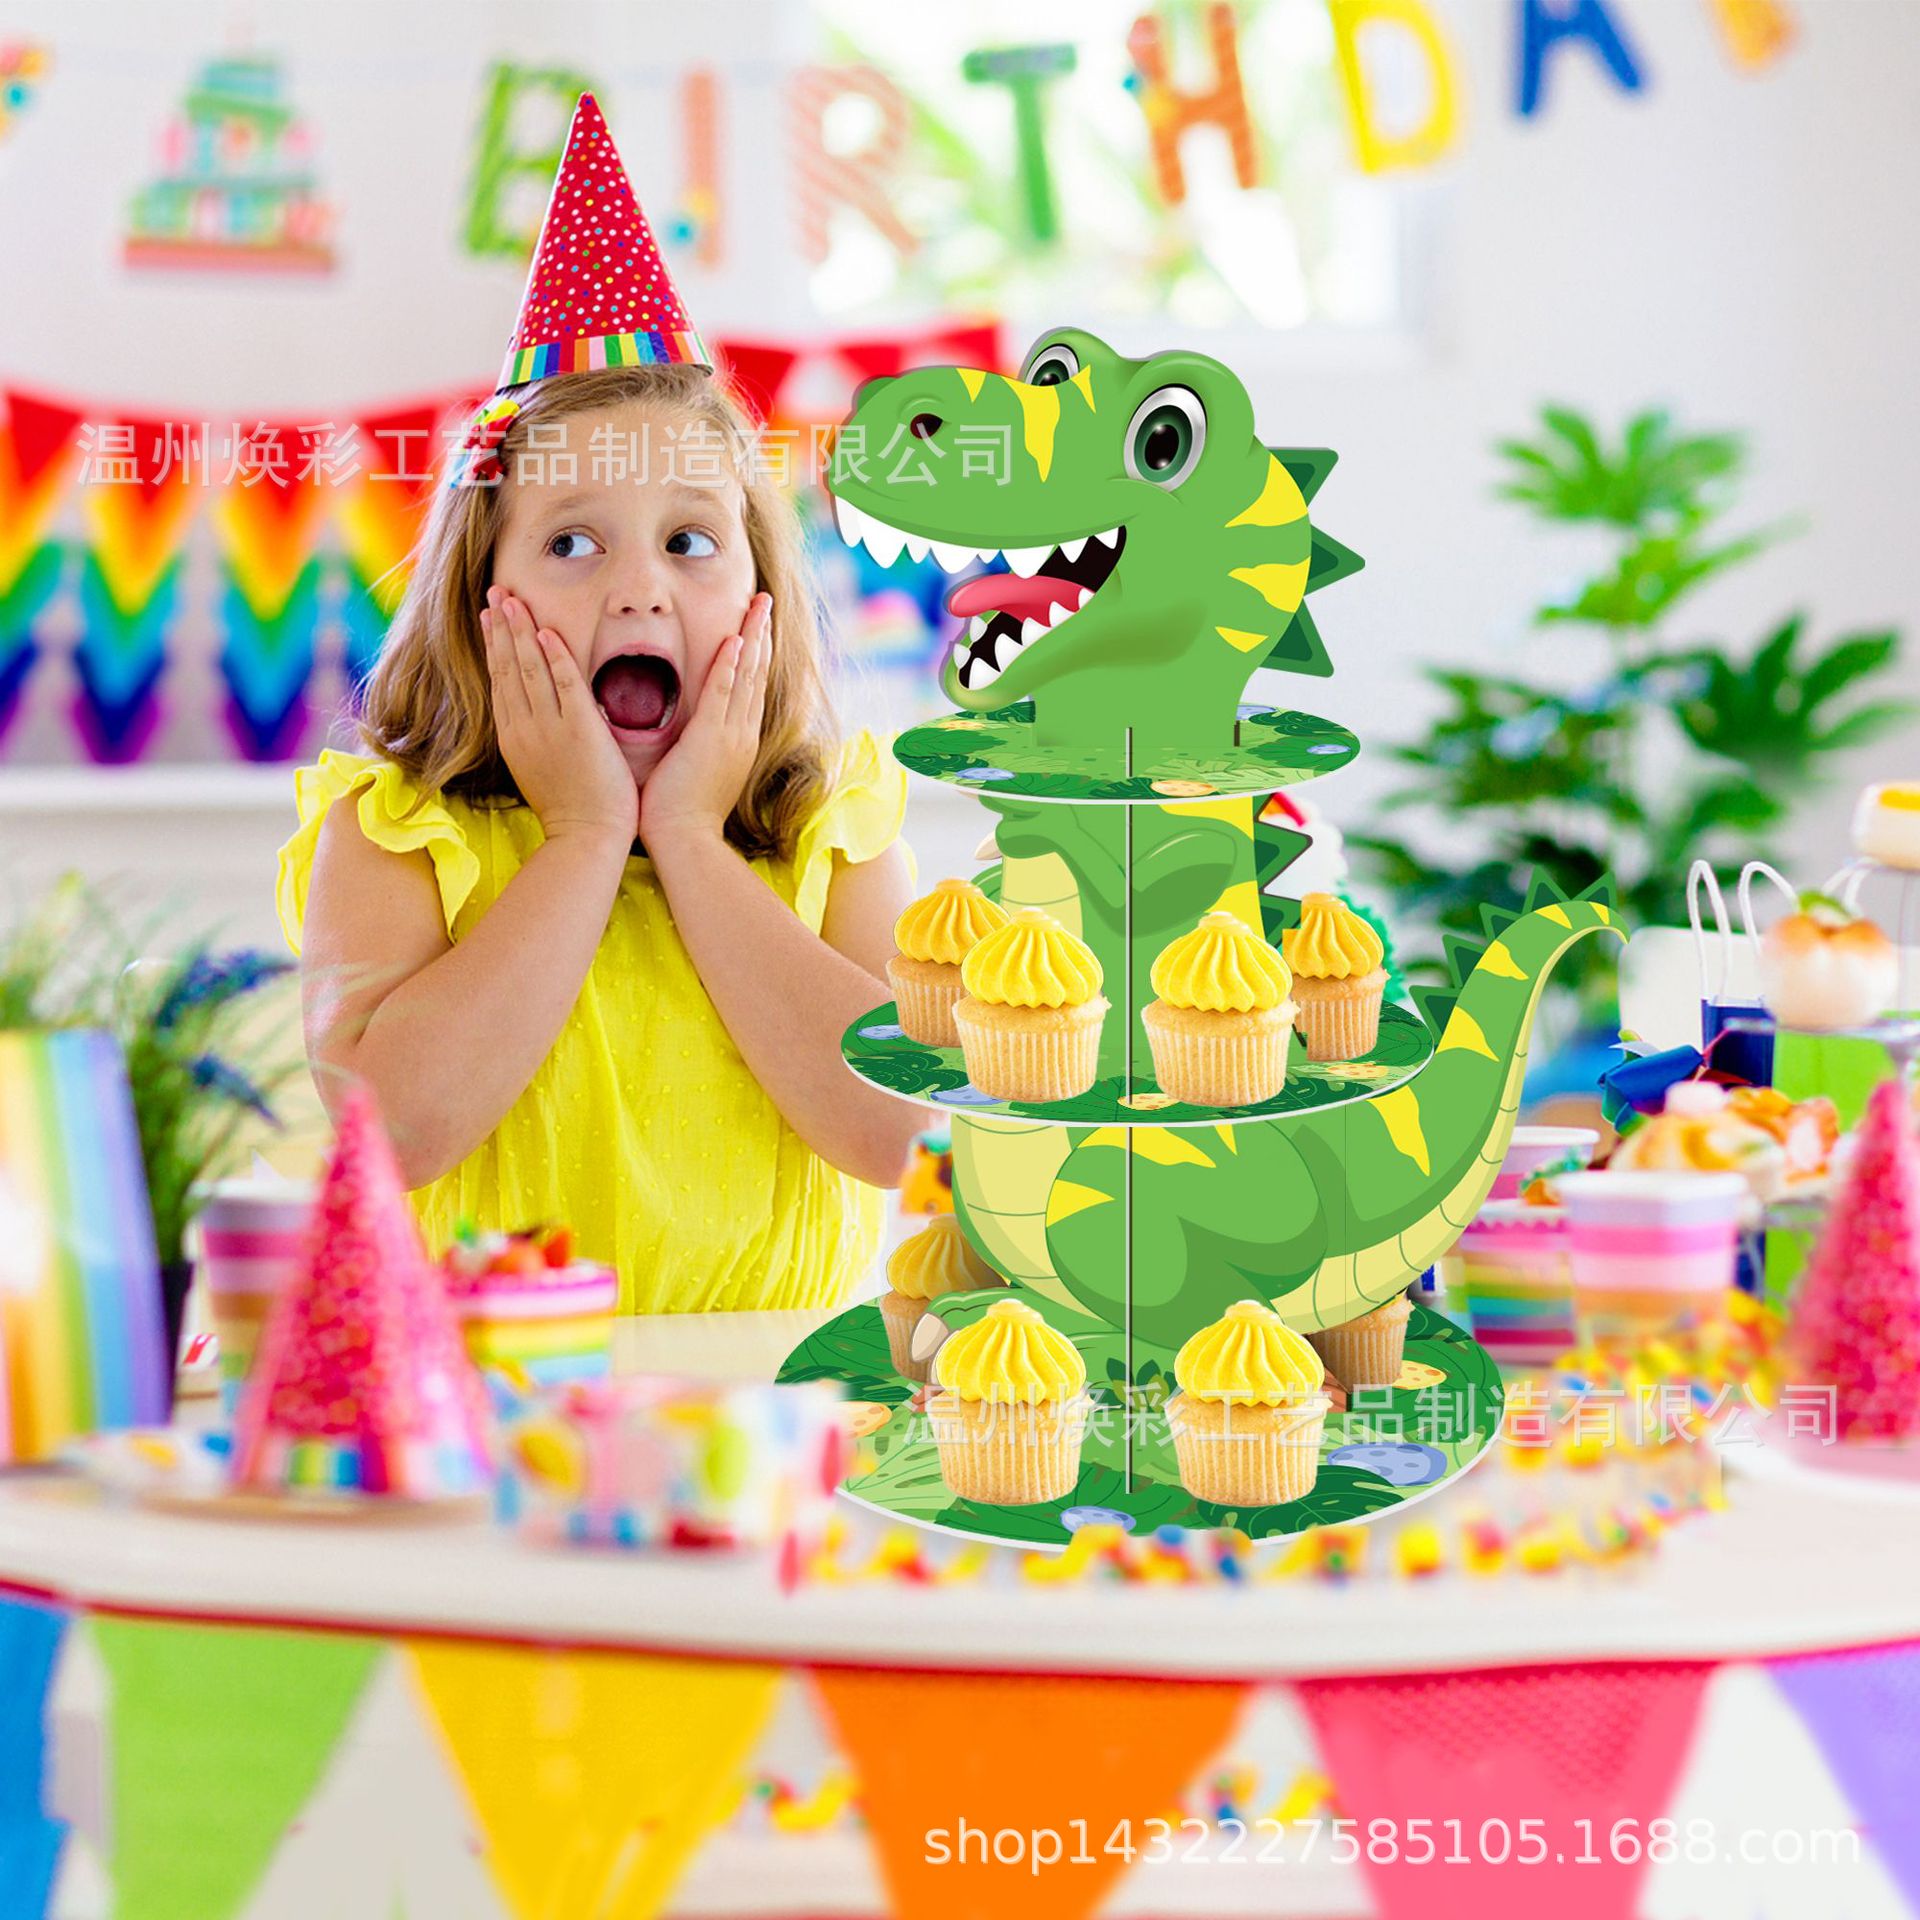 超可爱恐龙蛋糕～ 中间的恐龙还是客人的孙子最喜欢的“臭臭”做的设计～... - Rainbow Delissert